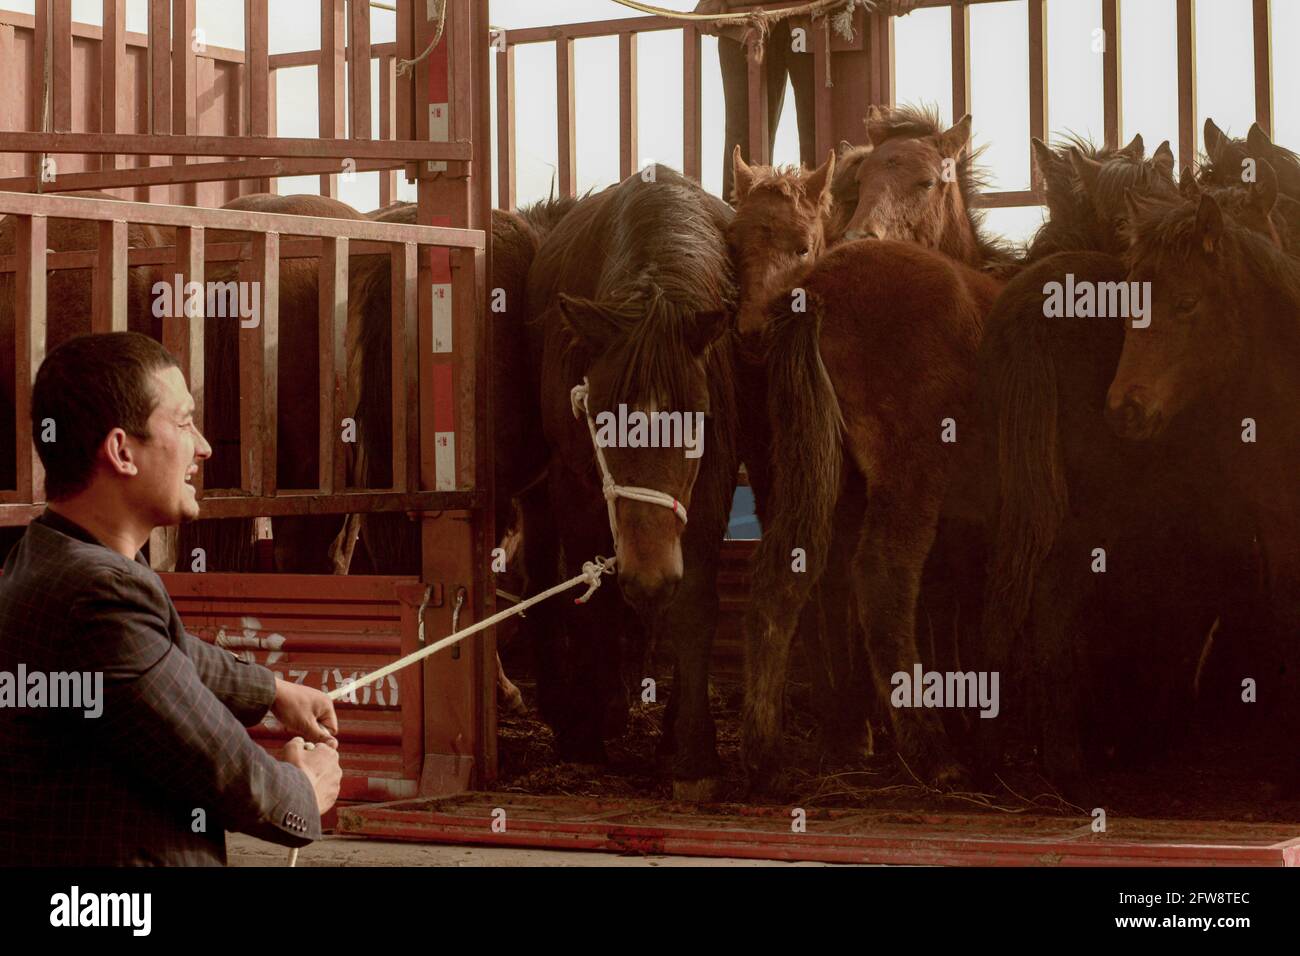 A man holding his horses at the animal fair Kashgar, Xinkiang, Popular Republic of China, 2019 Stock Photo